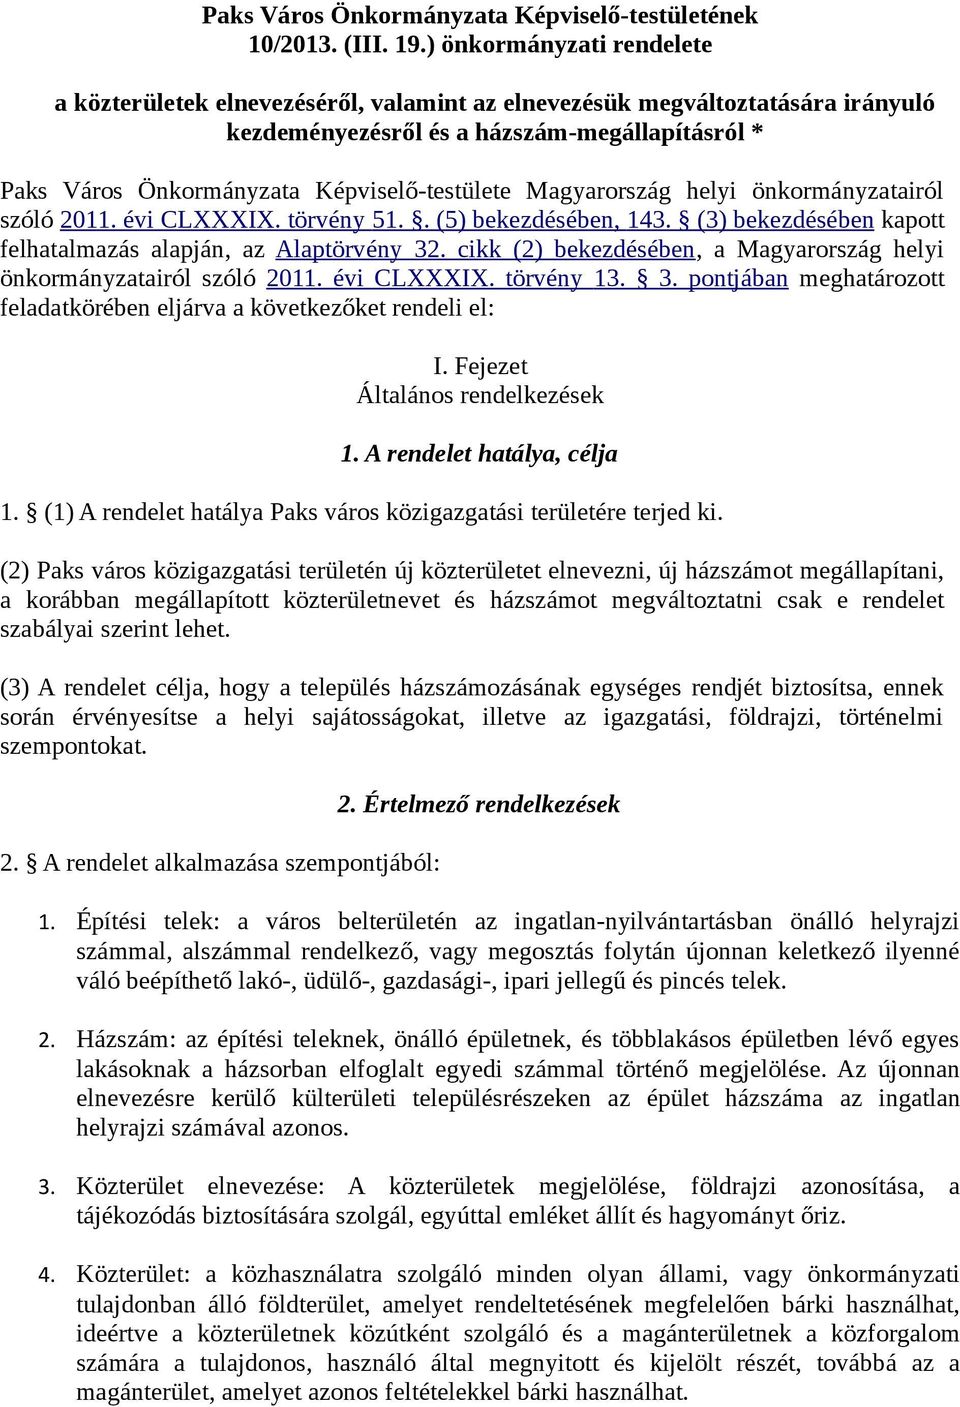 Magyarország helyi önkormányzatairól szóló 2011. évi CLXXXIX. törvény 51.. (5) bekezdésében, 143. (3) bekezdésében kapott felhatalmazás alapján, az Alaptörvény 32.